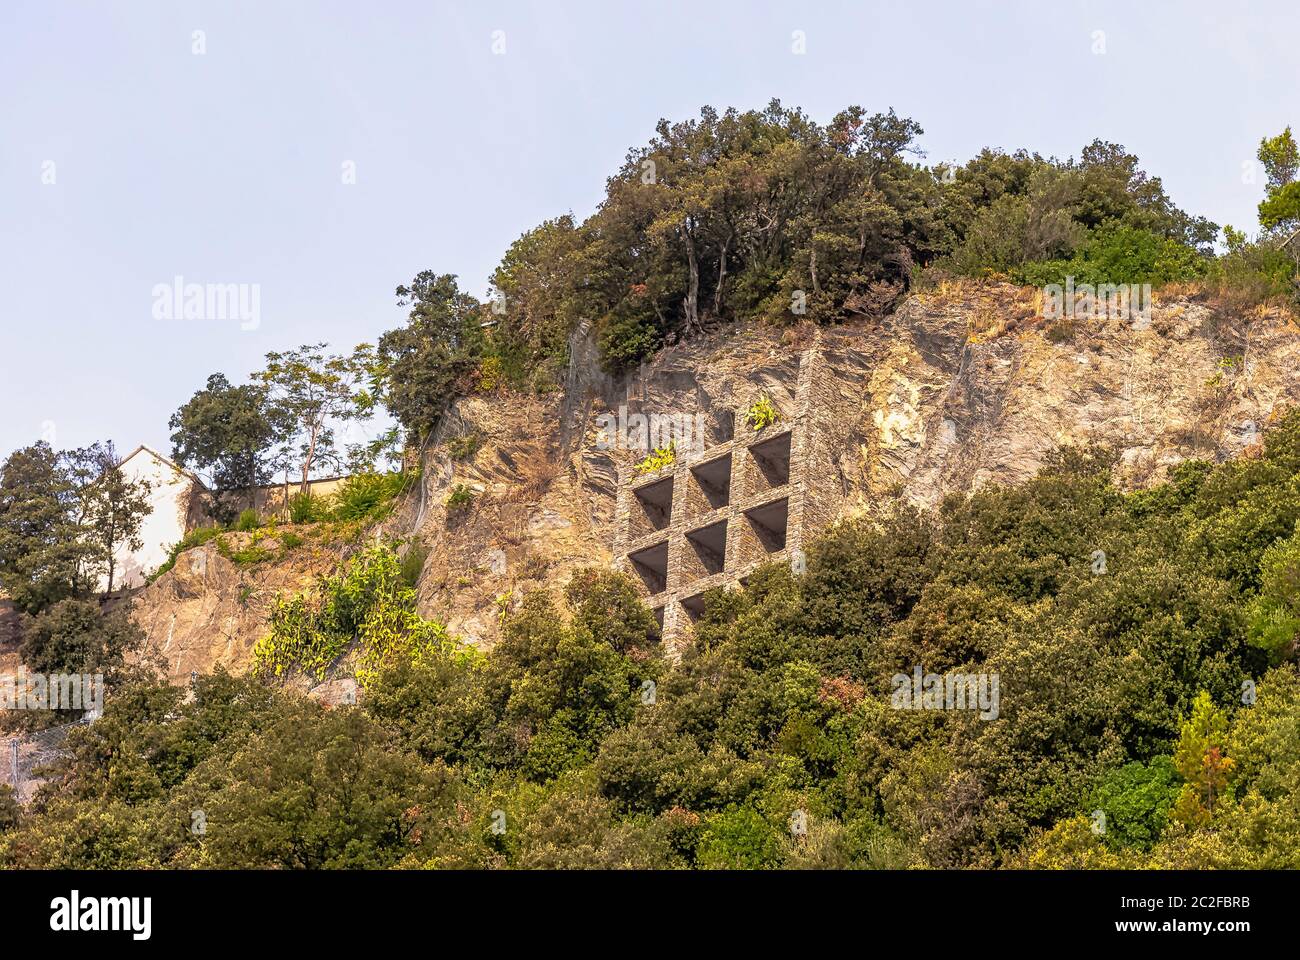 Structure spéciale pour soutenir la colline - Monterosso al Mare, Cinque Terre, Ligurie, Italie Banque D'Images